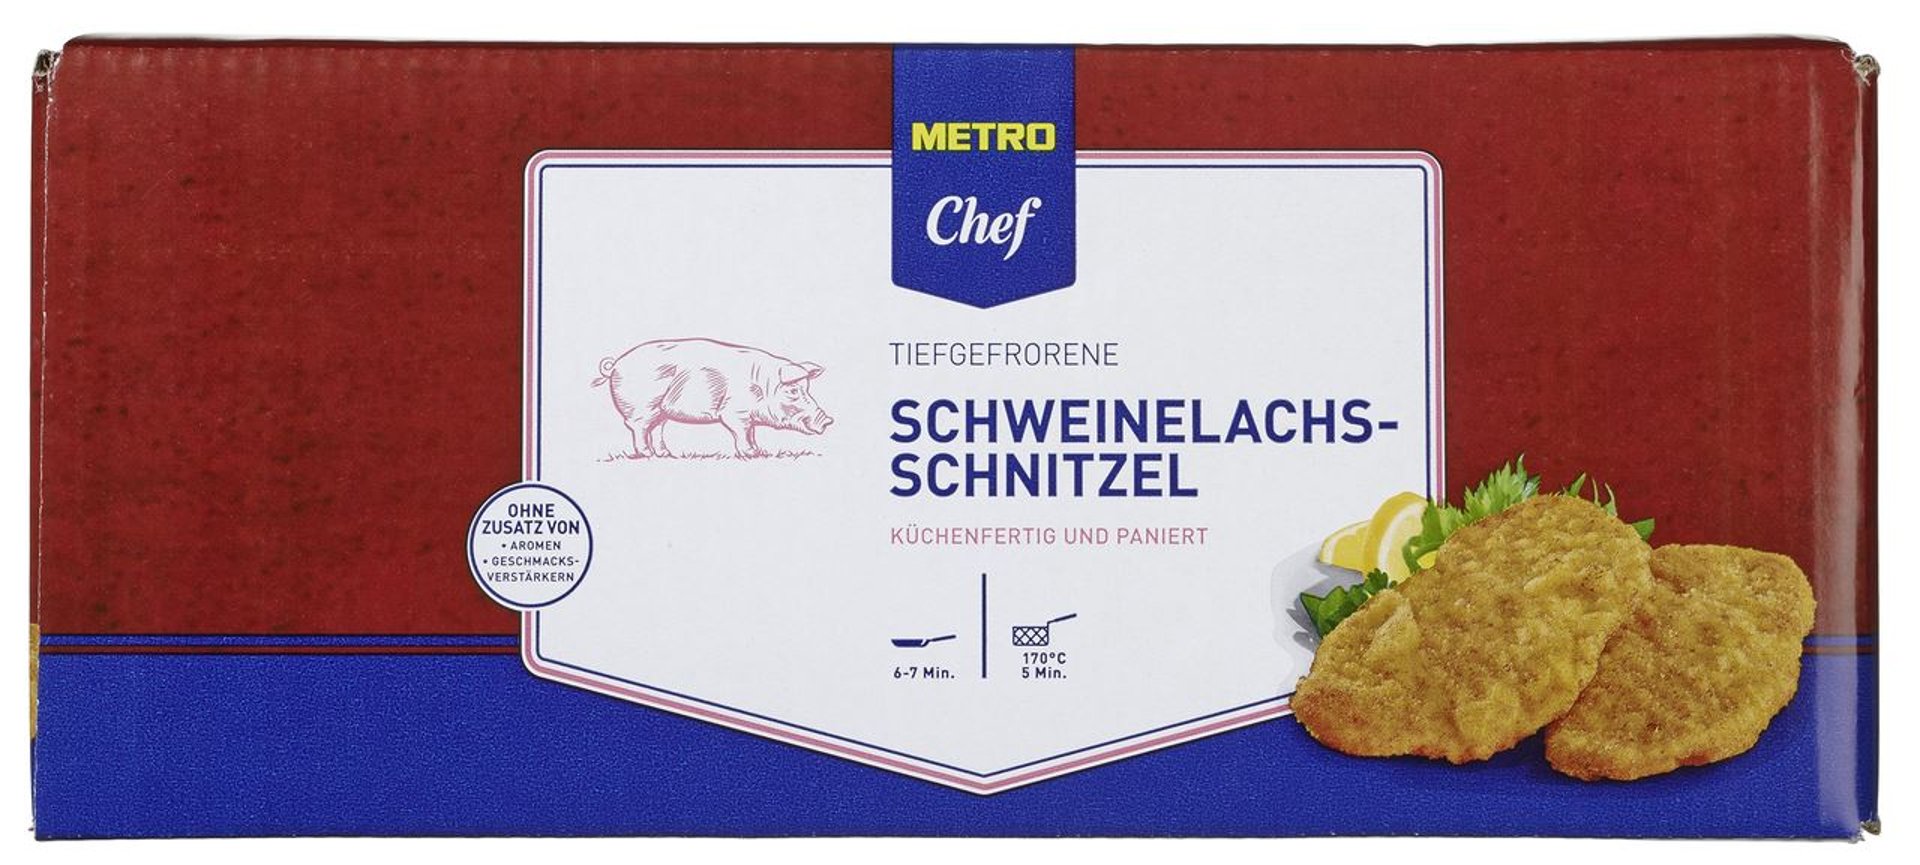 METRO Chef - Schweine Karton 40 8 200 tiefgefroren, - paniert, Lachsschnitzel kg à Stück ca. g